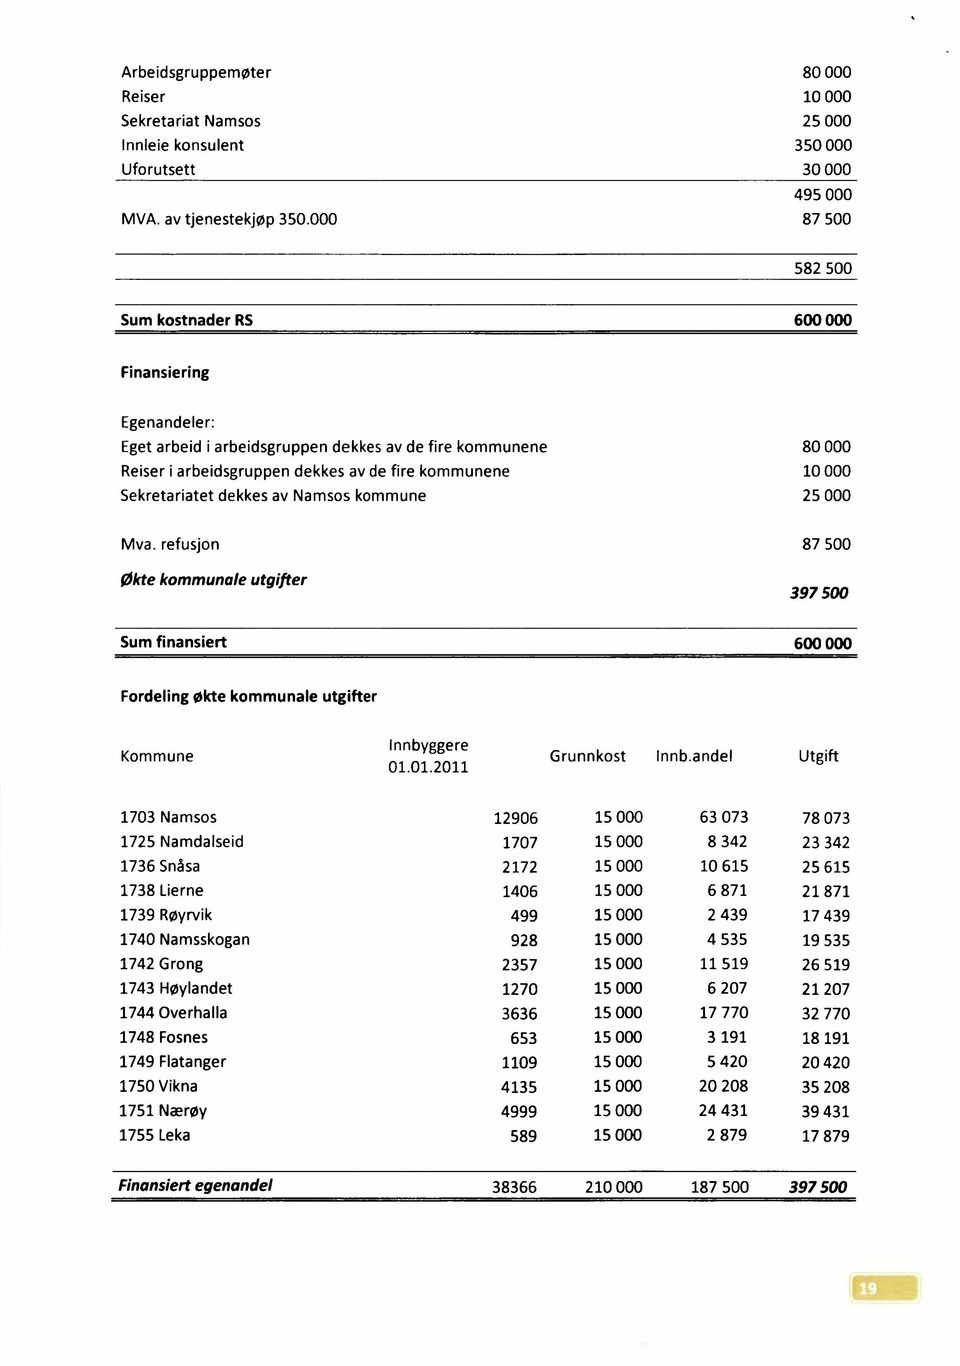 Sekretariatet dekkes av Namsos kommune 25 000 Mva. refusjon økte kommunaleutgifter 87 500 397 500 Sum finansiert 600 000 Fordeling økte kommunale utgifter Kommune Innbyggere 01.01.2011 Grunnkost Innb.